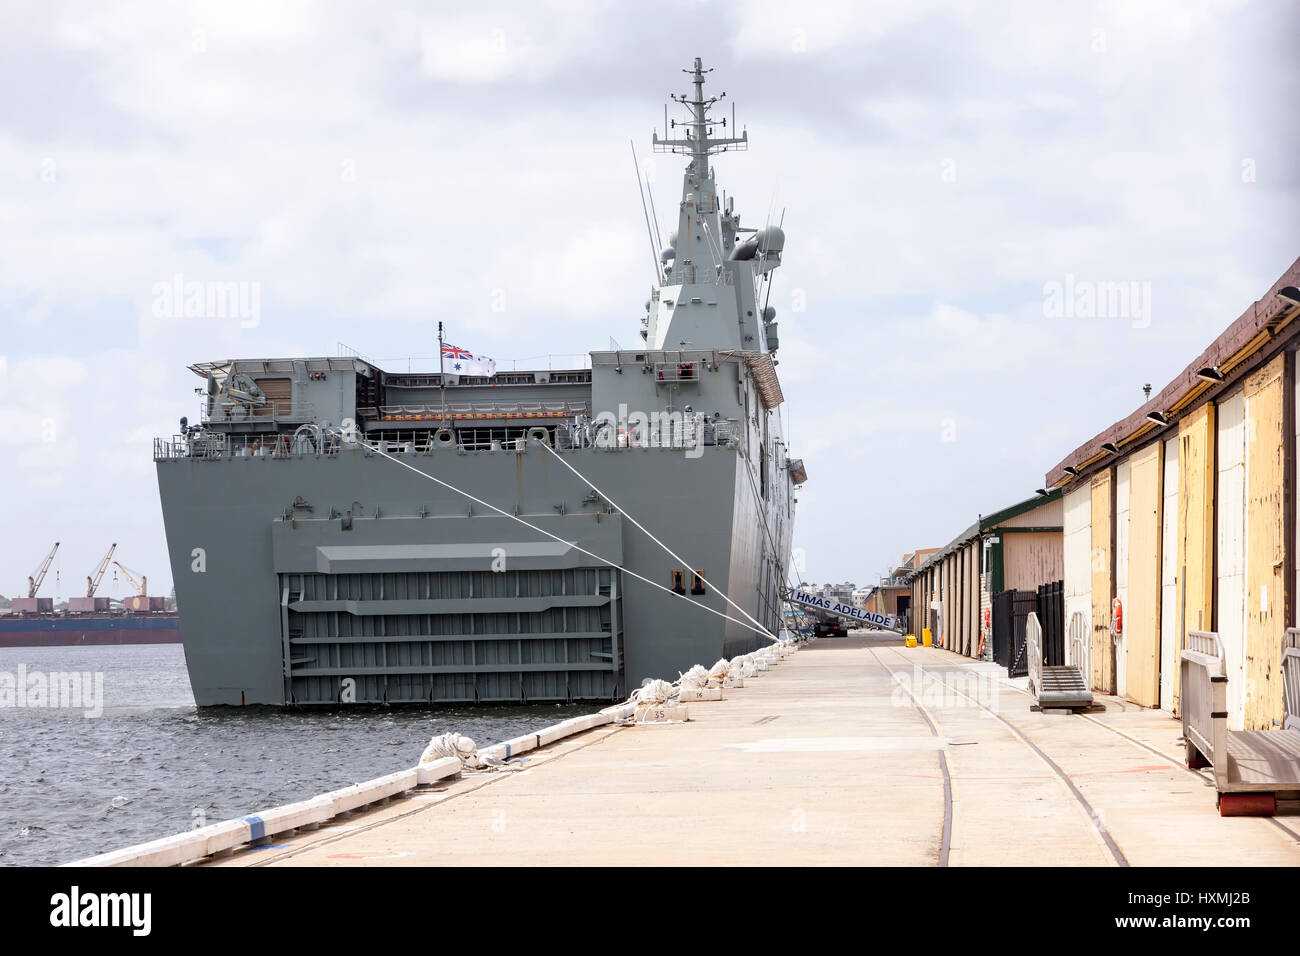 Fremantle Western Australia, HMAS Adelaide, porta-helicópteros/, un buque de asalto anfibio clase Canberra buque amarrado al muelle. Foto de stock